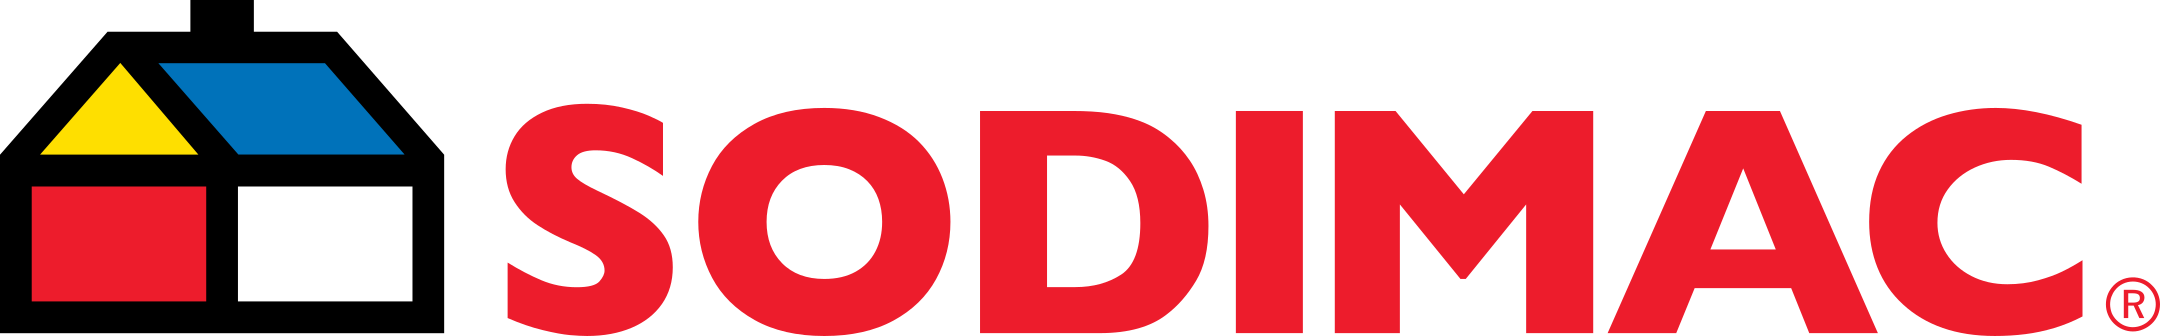 Sodimac Logo.